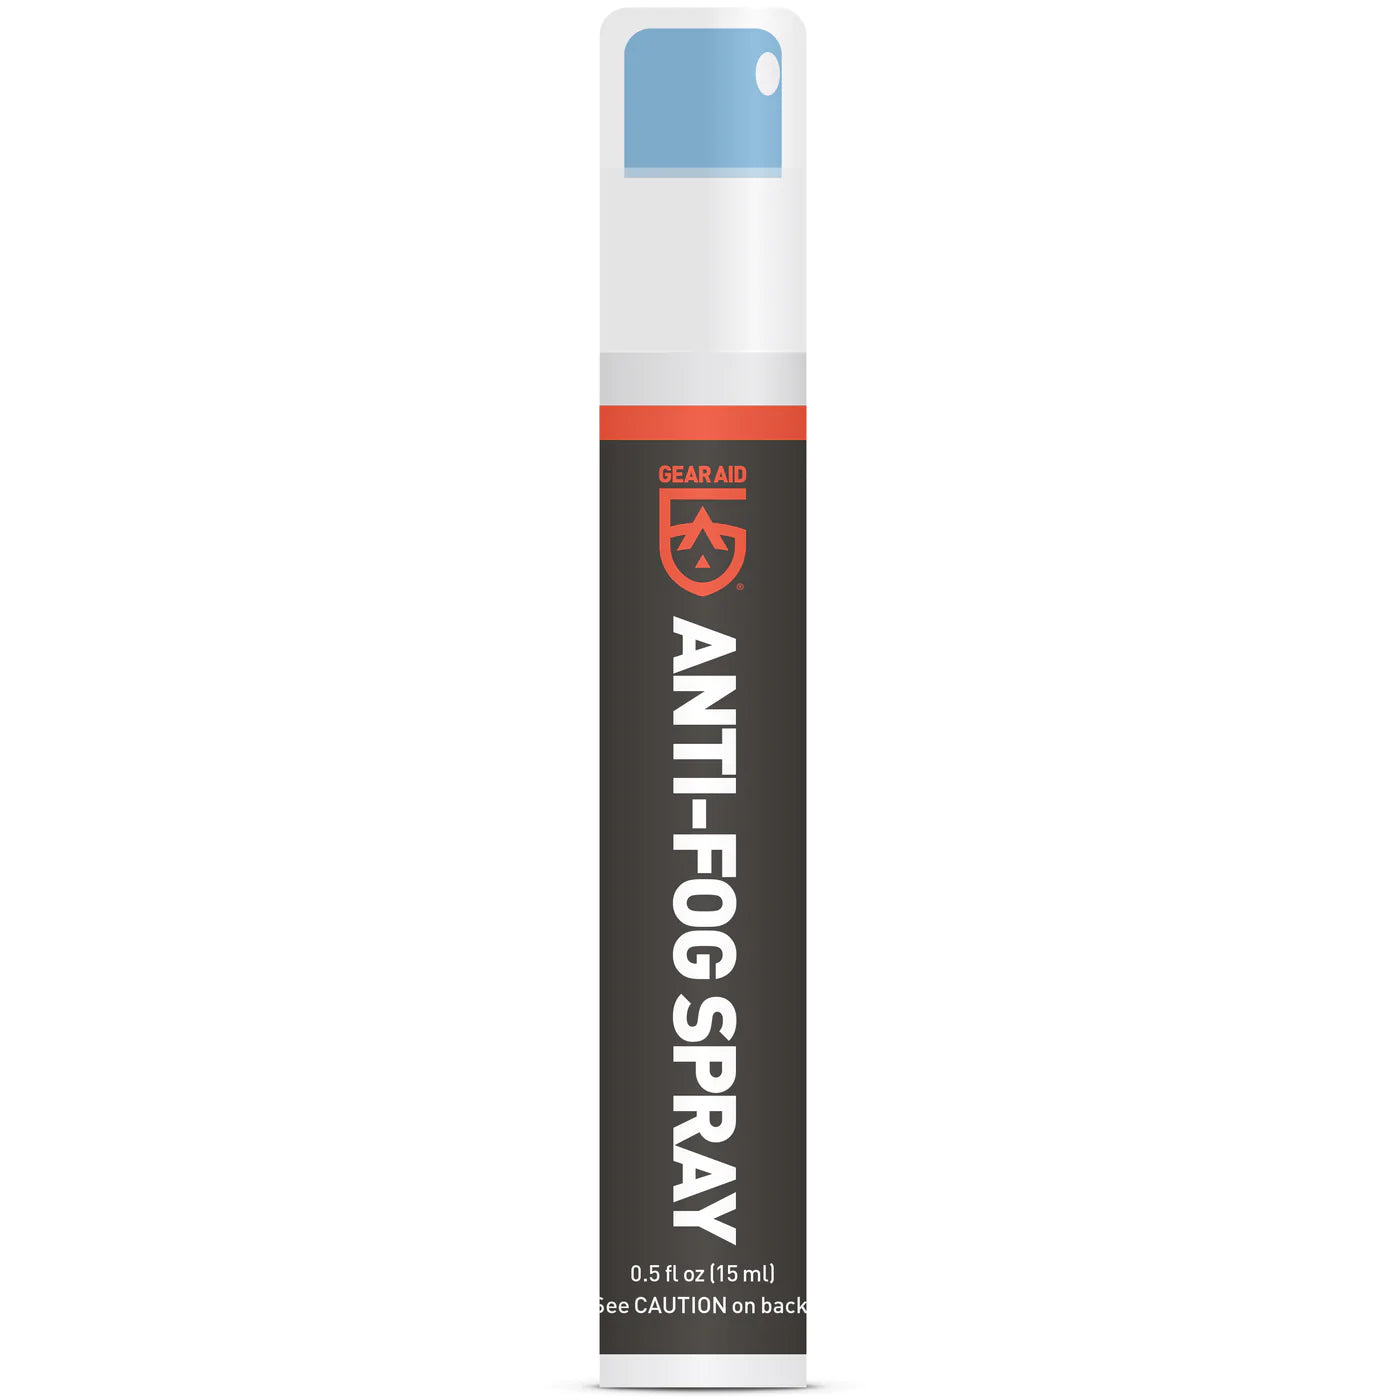 Gear Aid Antifog Spray